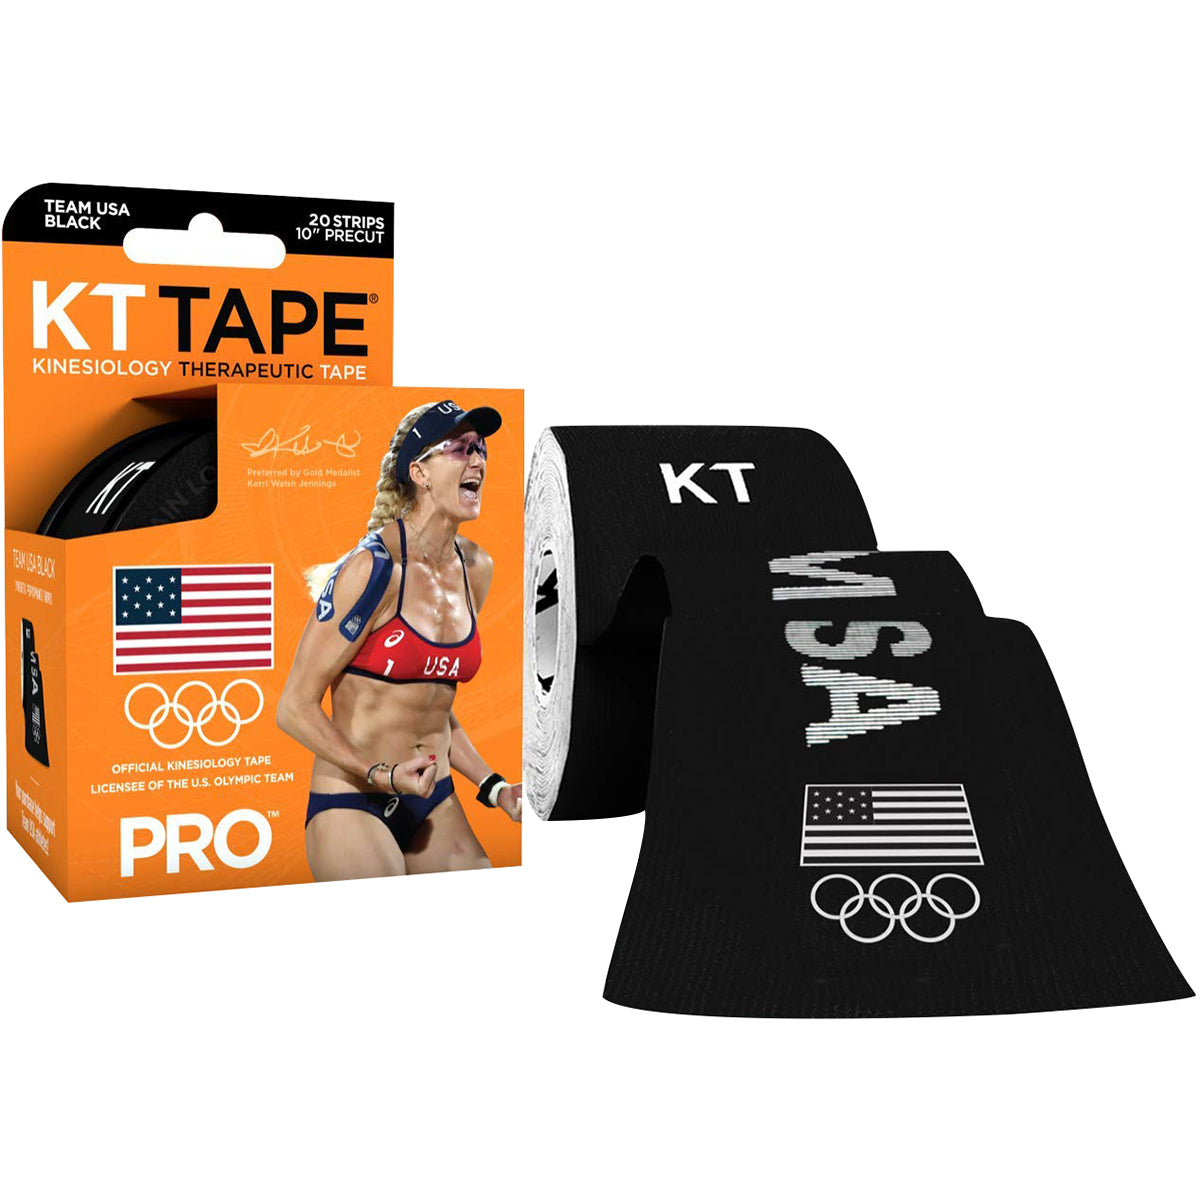 KT TAPE Pro Precut 3 Strip Beige Kinesiology Tape - Buy KT TAPE